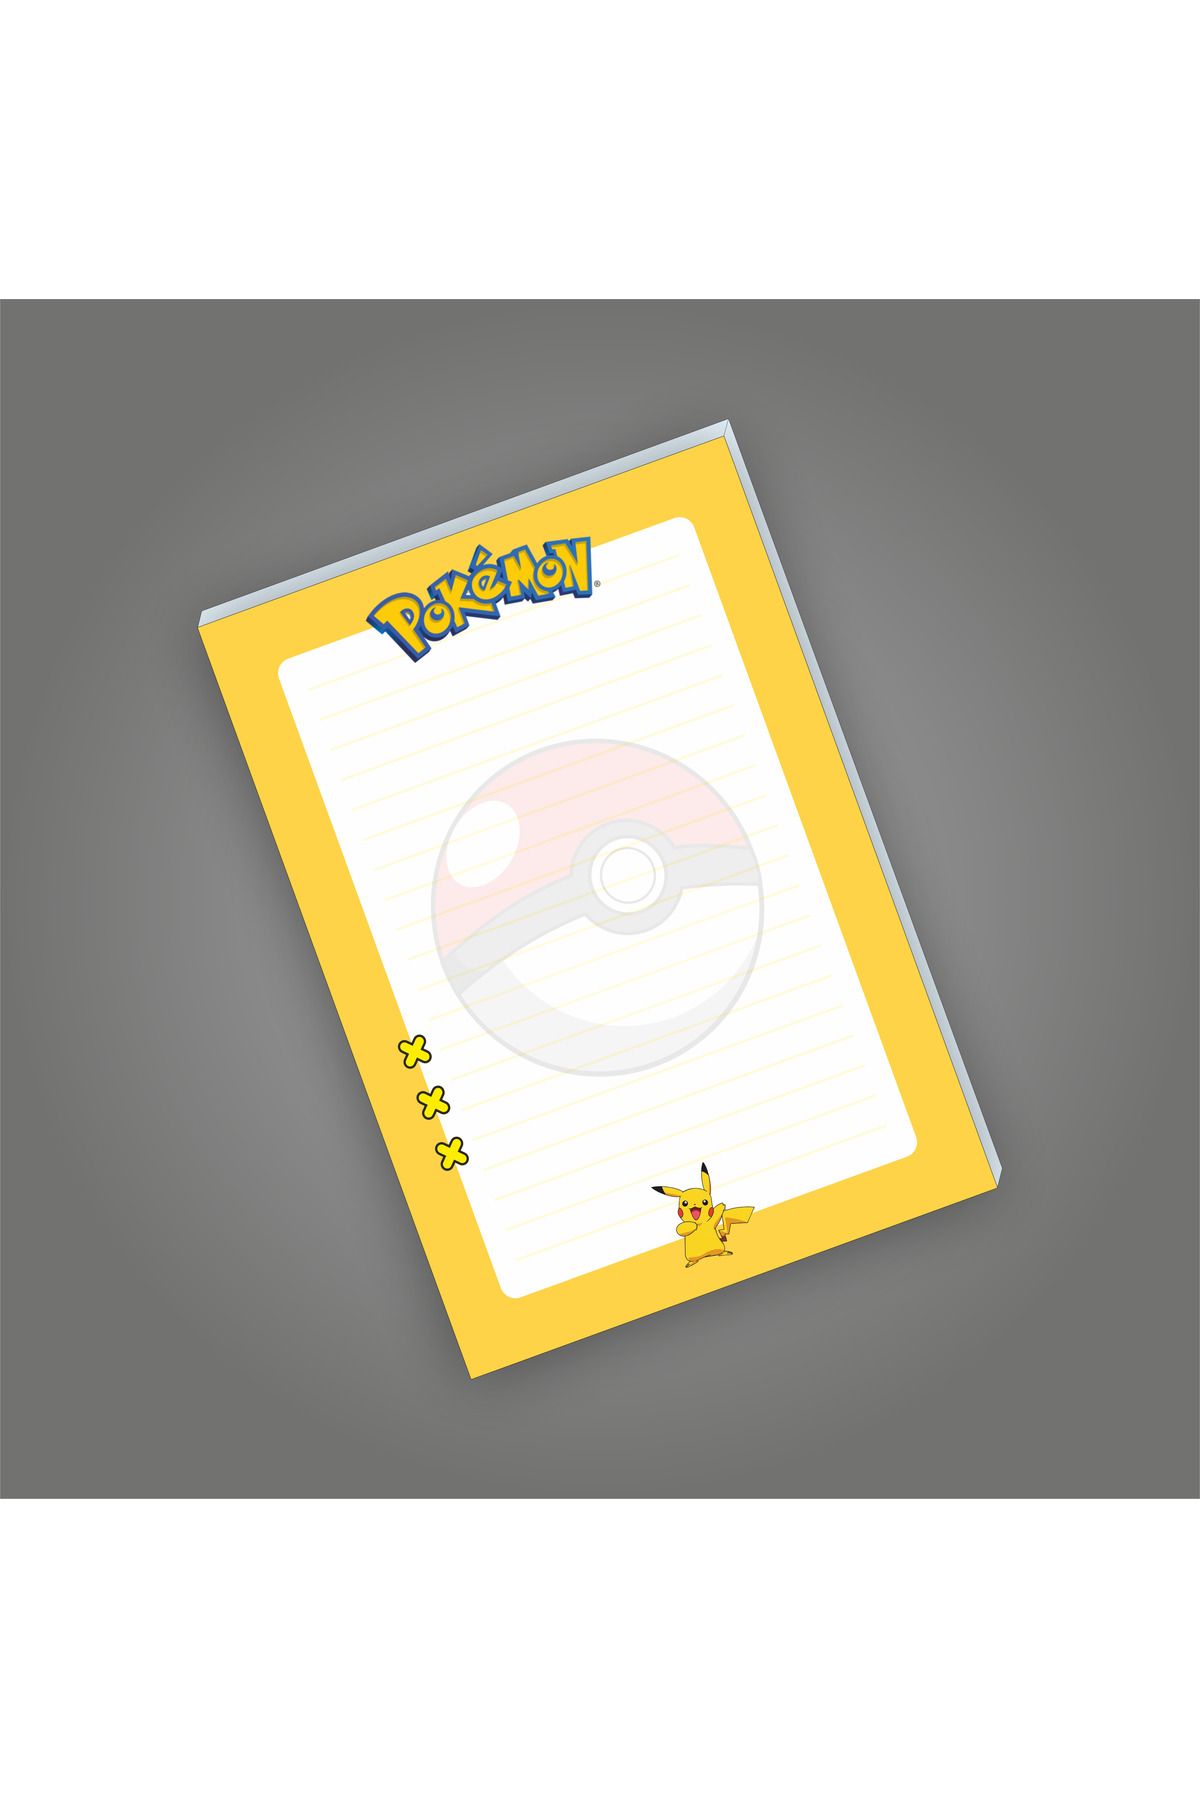 Ceres Studio Pokemon Not Defterleri | Notepad | Bloknot | A5 (14x20cm) 40 Sayfa Not Defteri